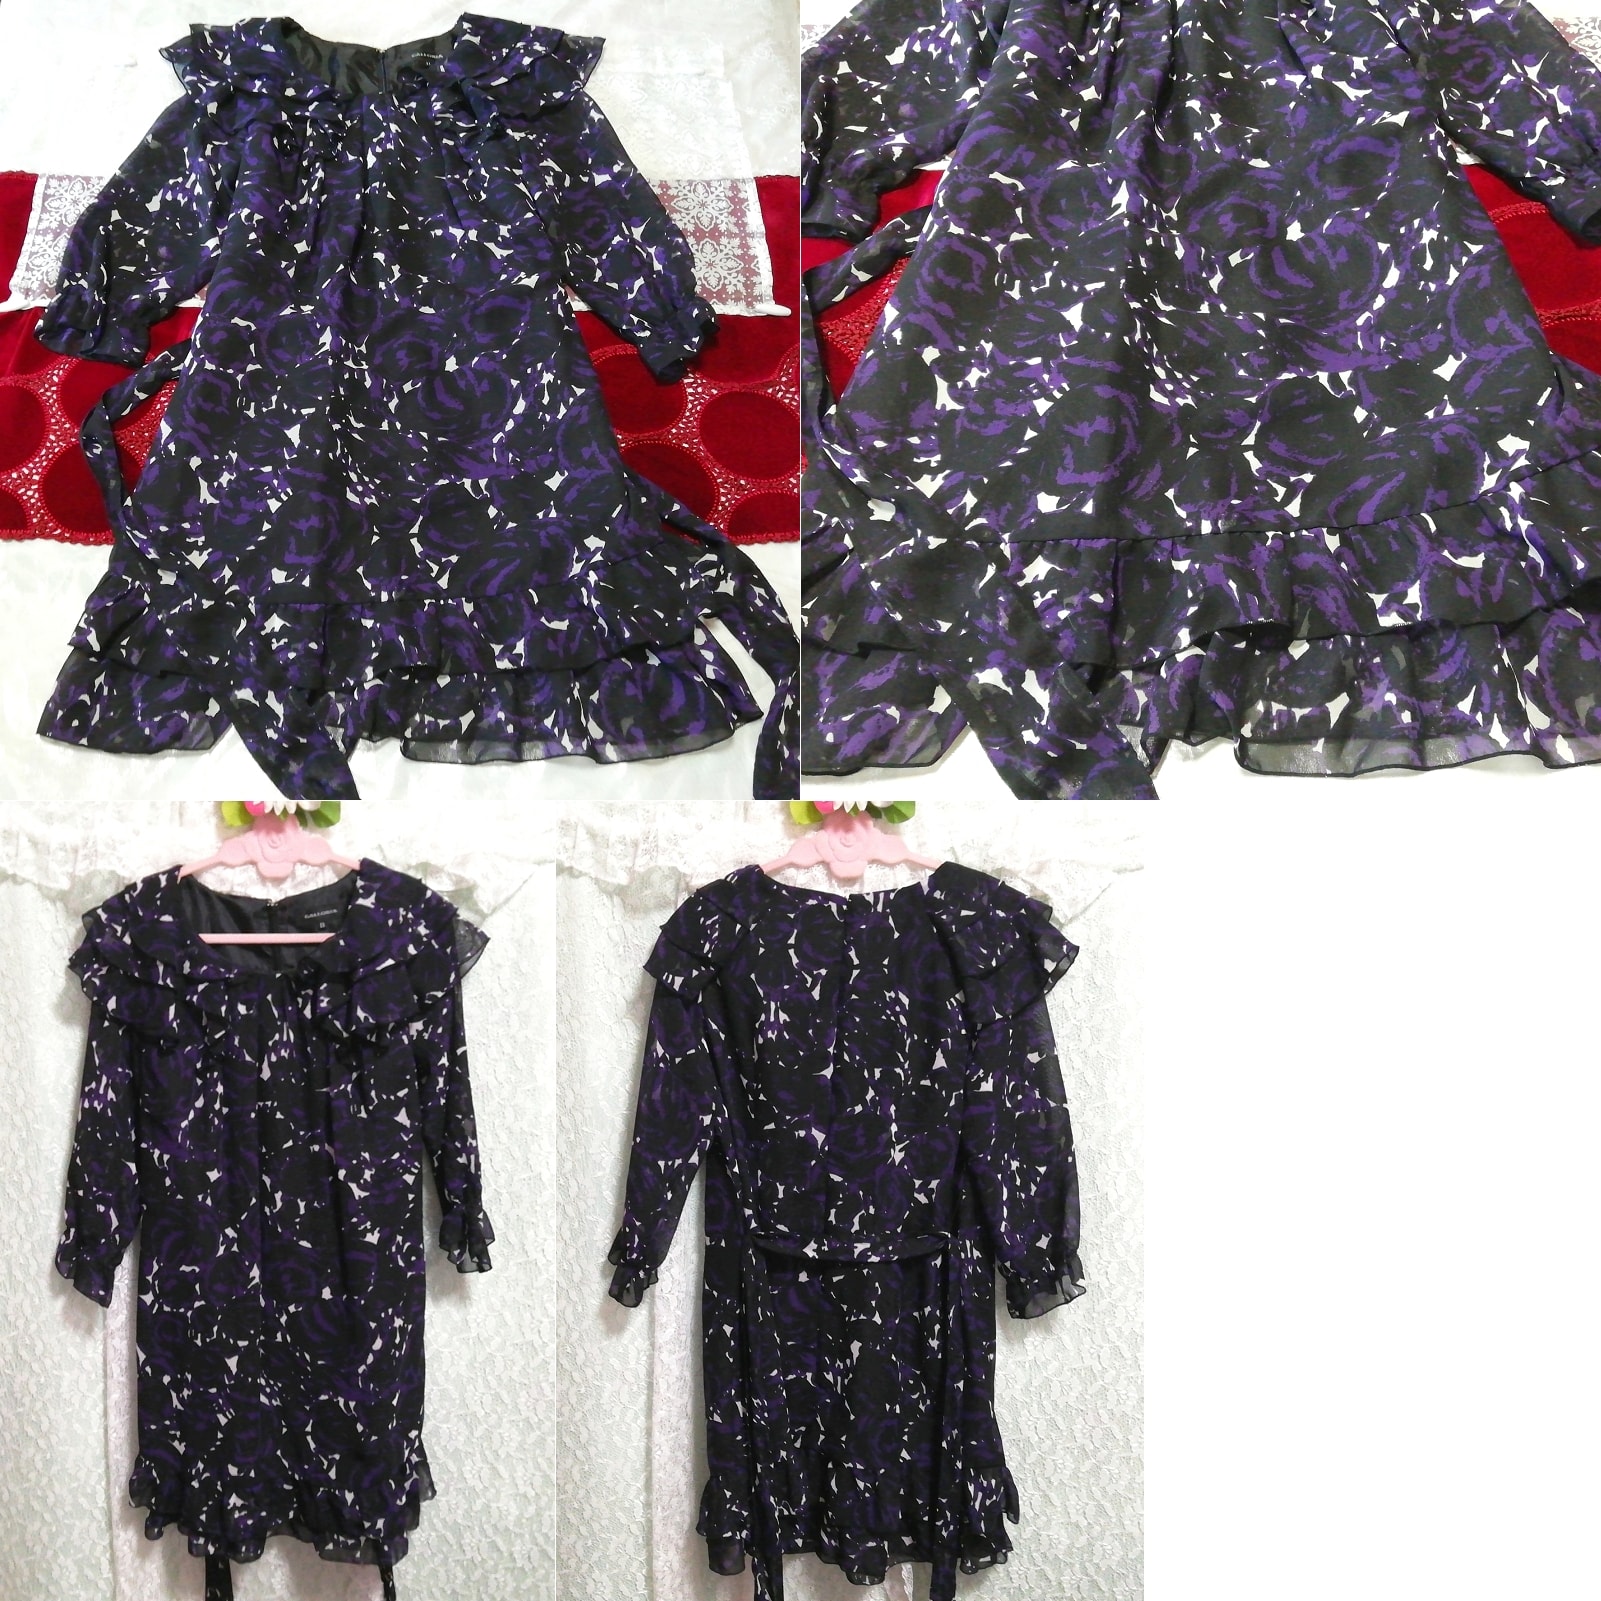 Black purple chiffon ruffle long sleeve tunic negligee nightgown nightwear dress, tunic, long sleeve, m size